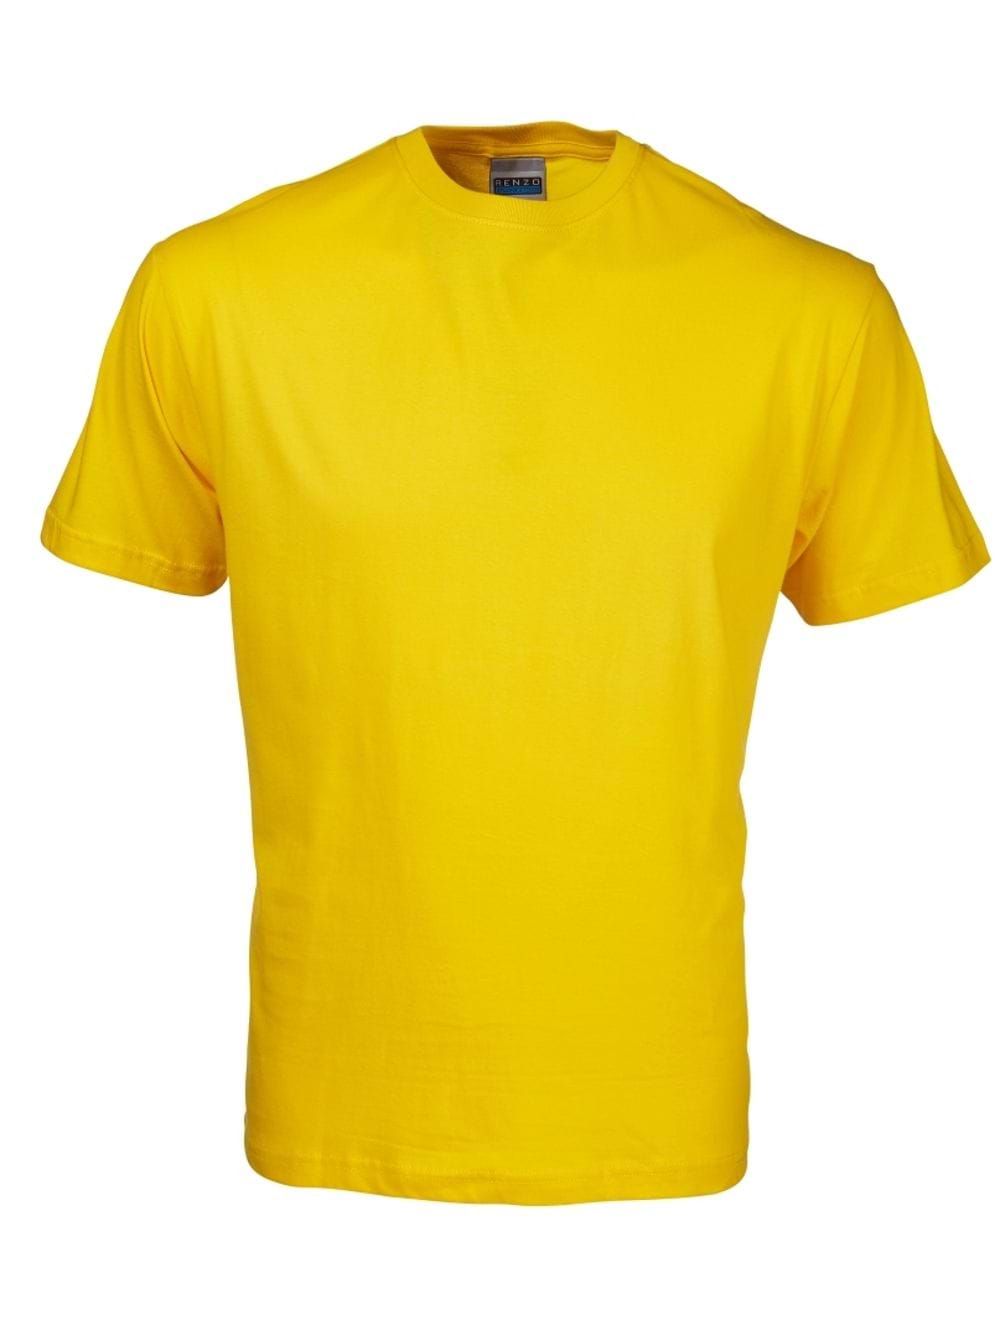 165G Crew Neck T-Shirt - Yellow